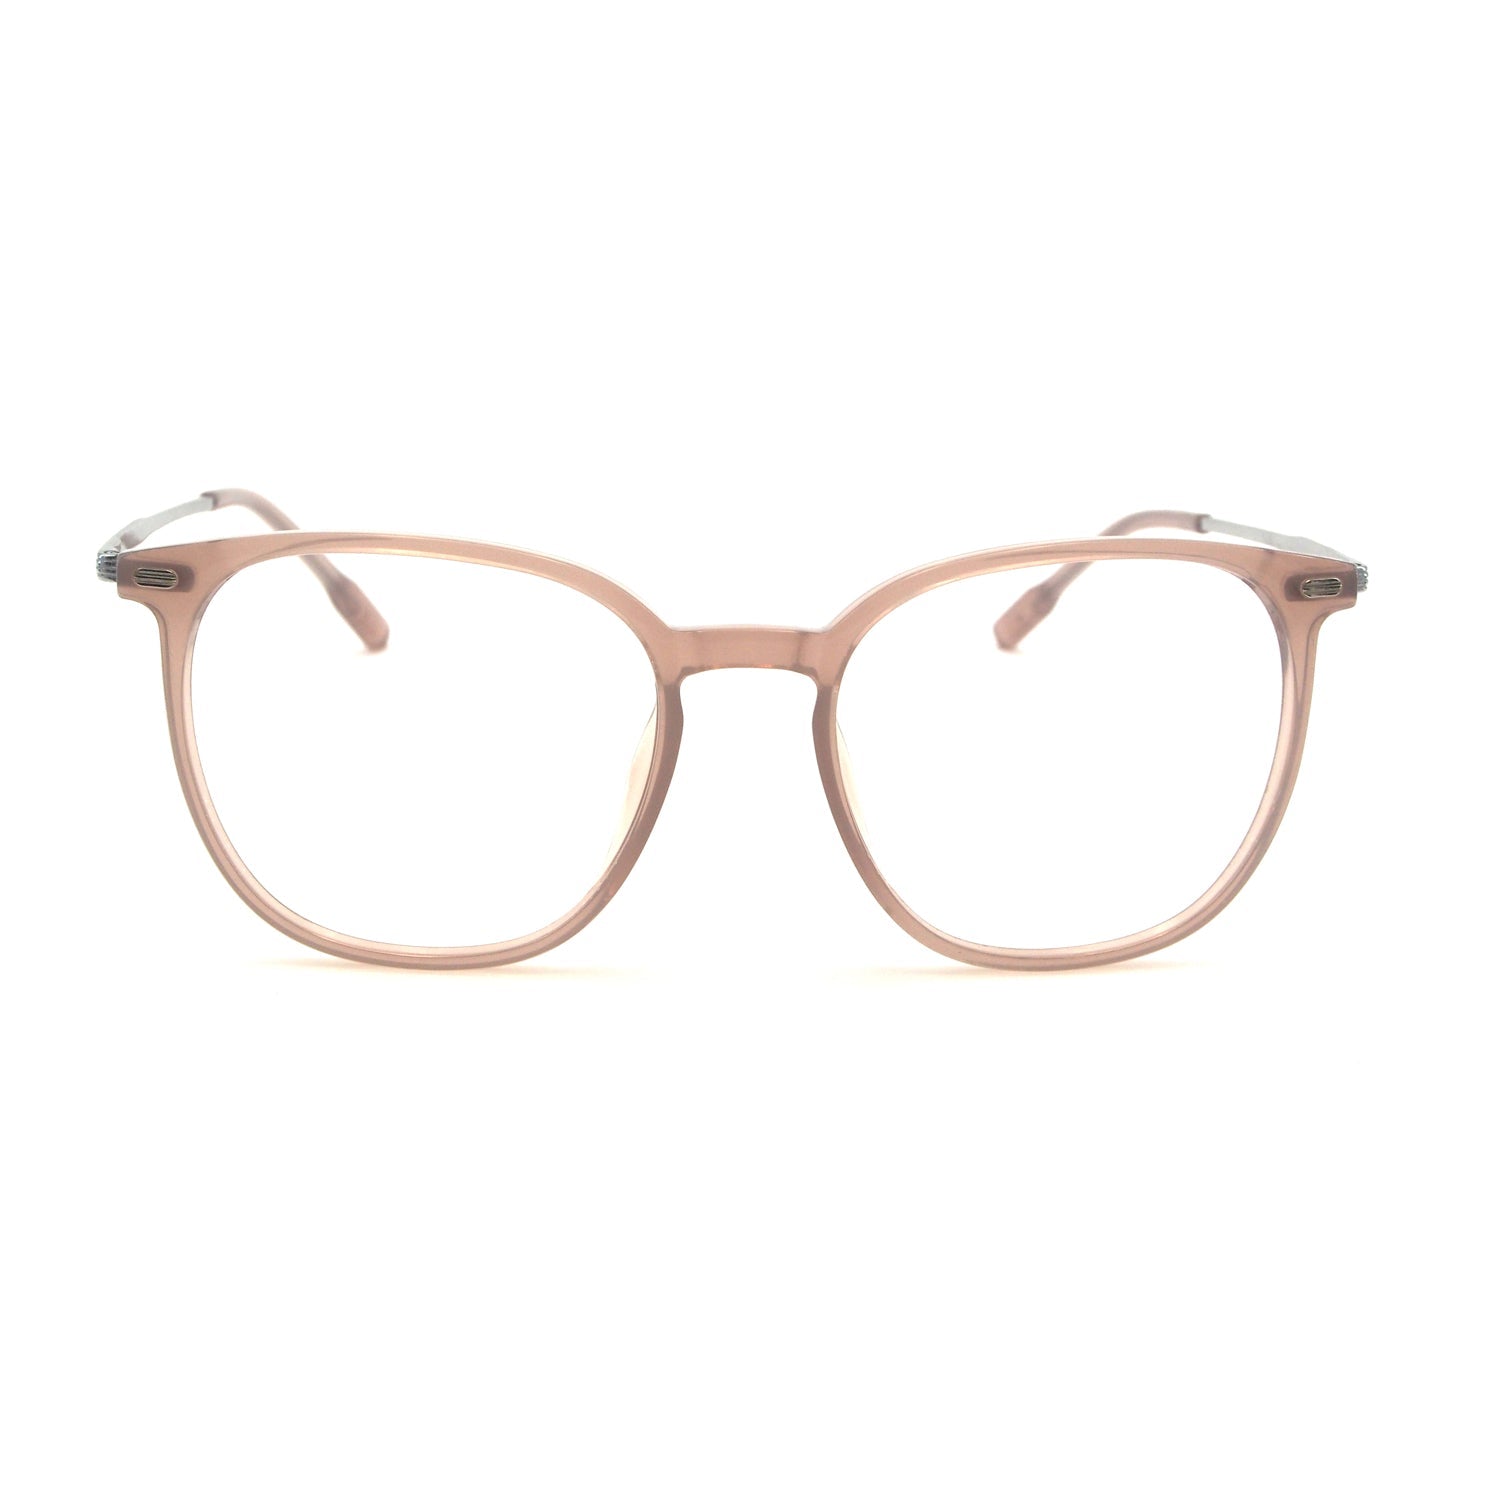 Kyo in Wheat Fields Eyeglasses - sightonomy